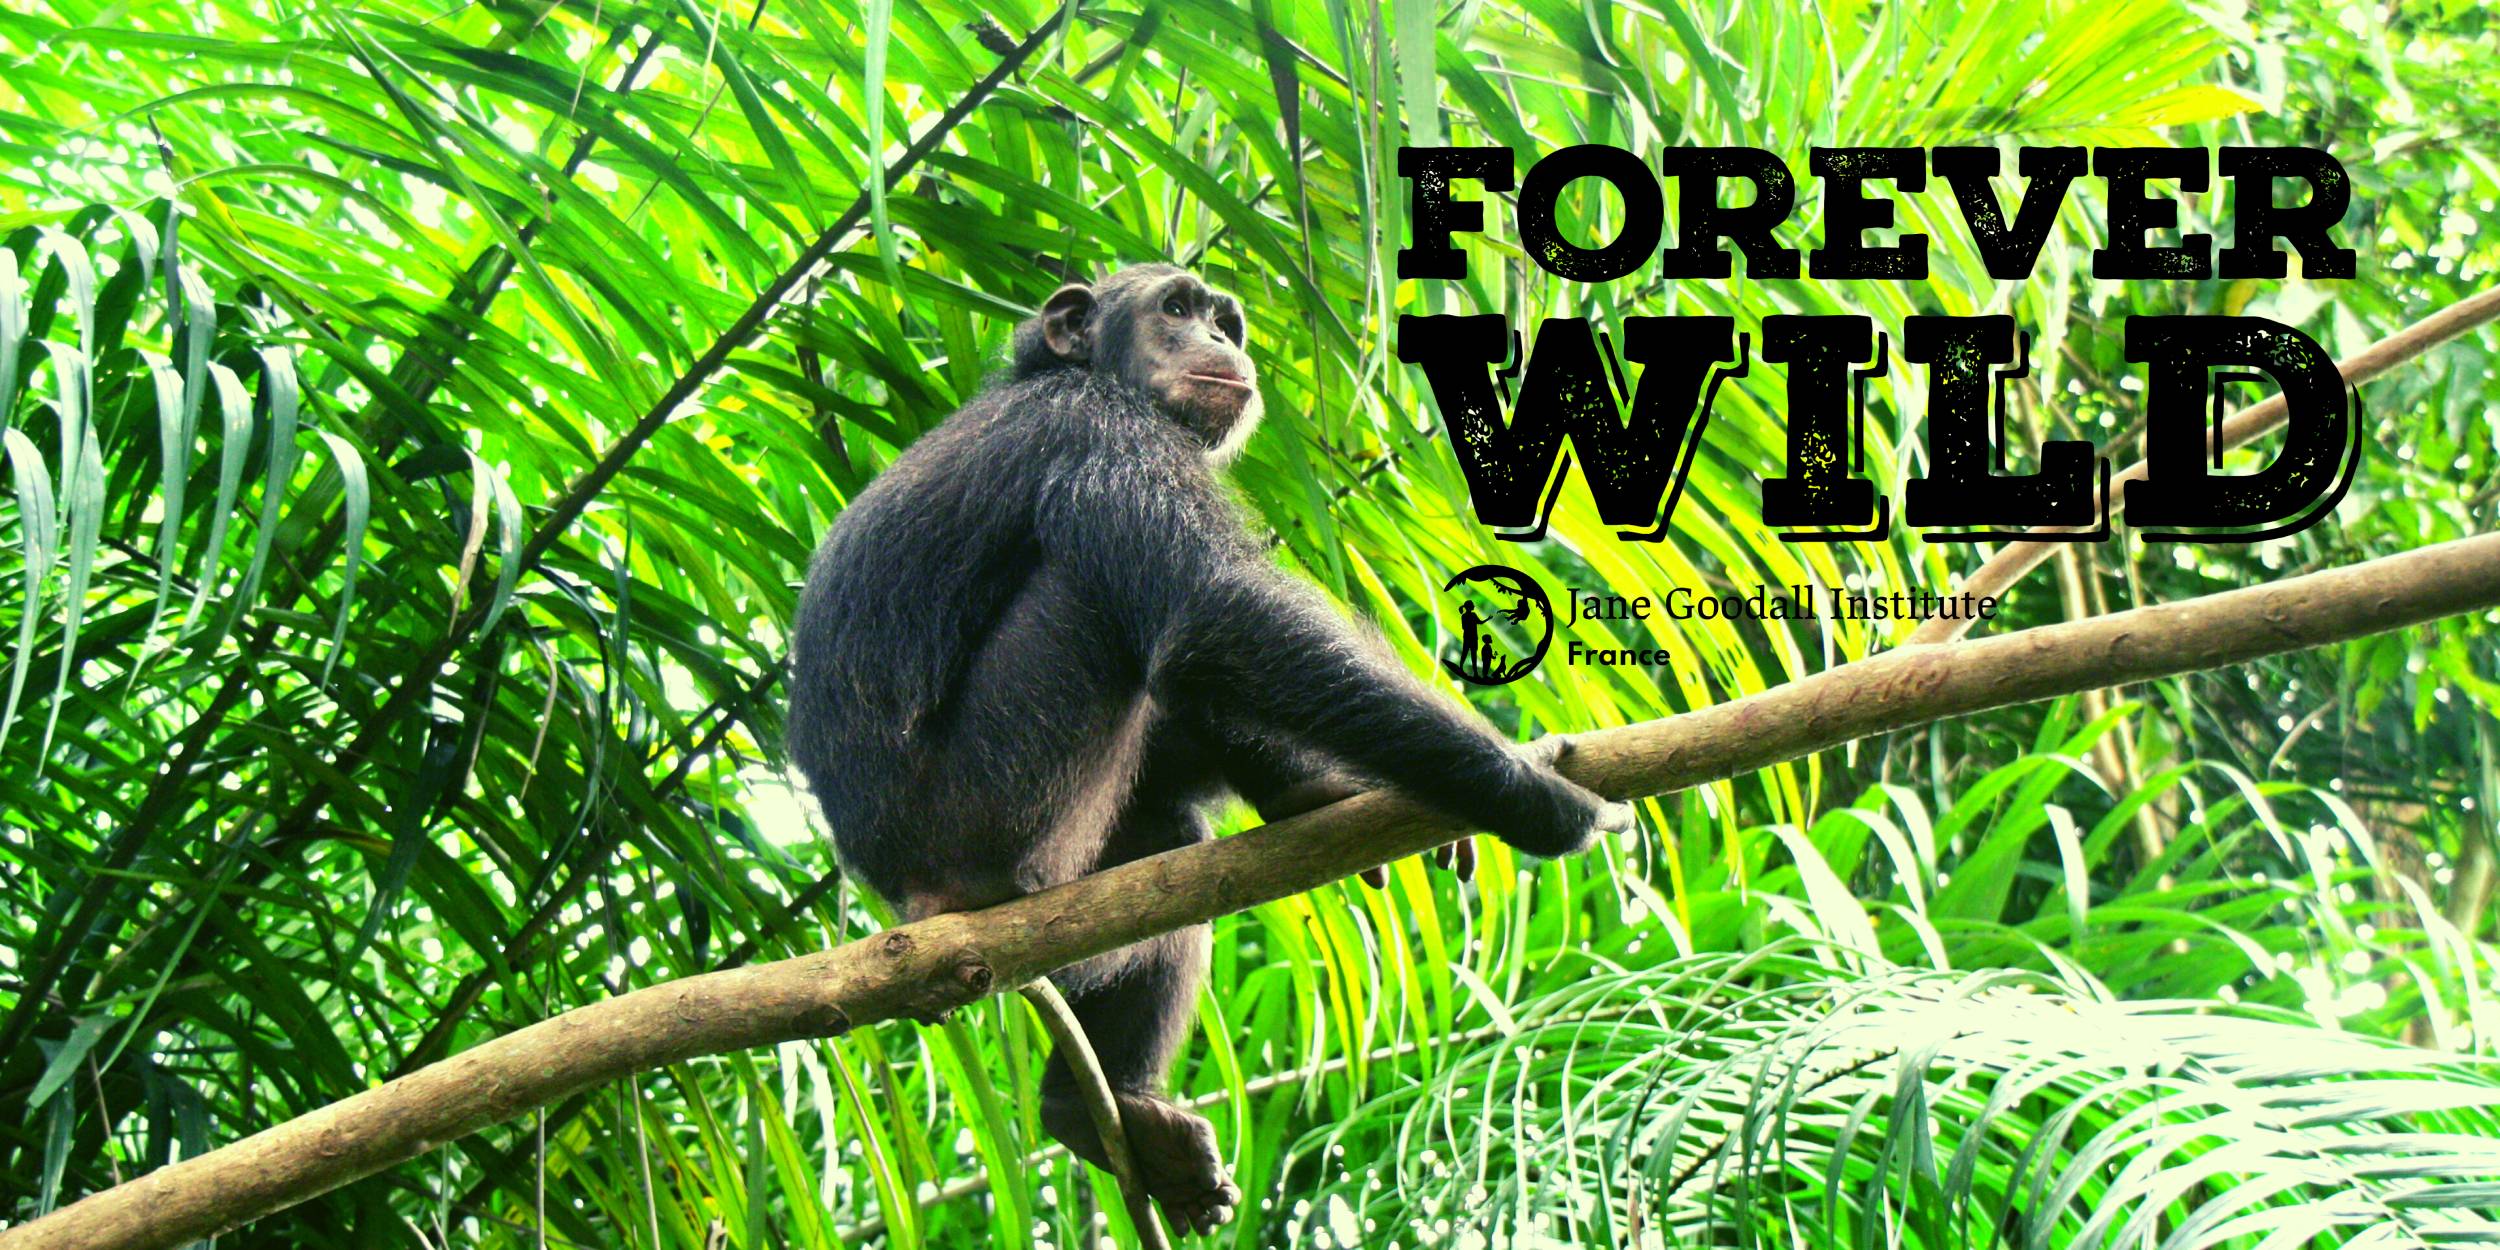 Participez à la lutte contre le trafic illégal des espèces sauvages avec le Jane Goodall Institute France